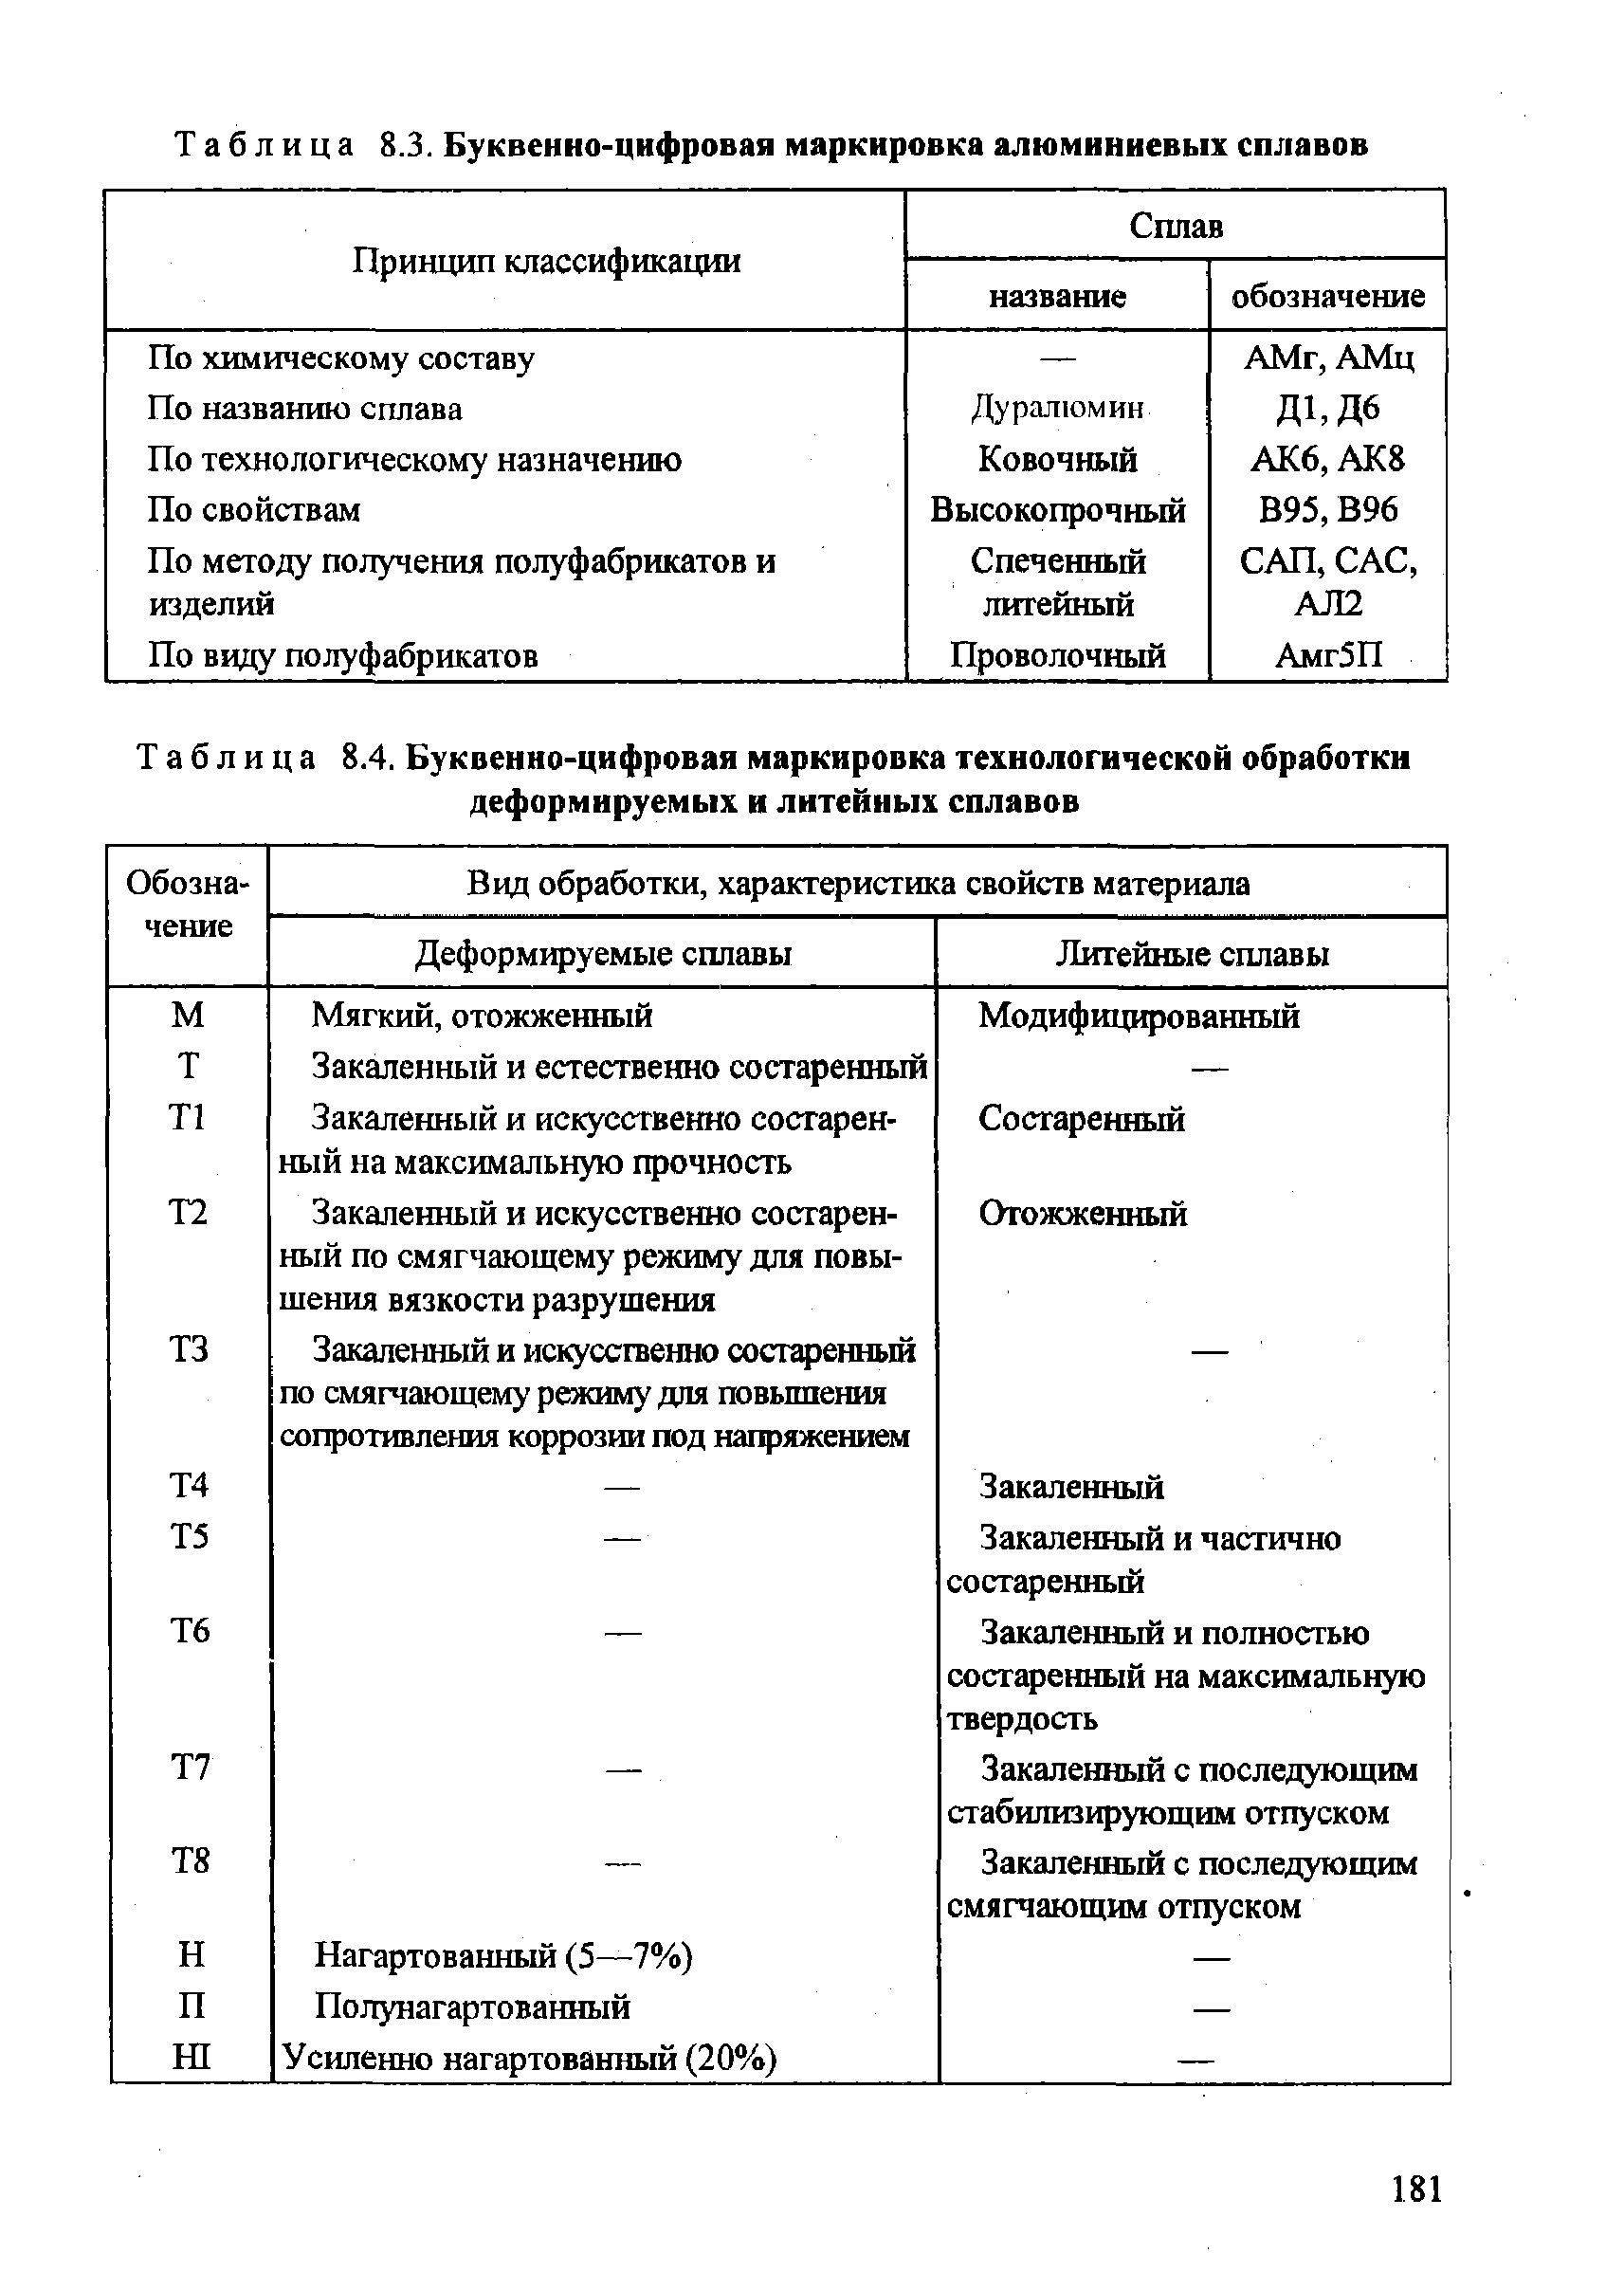 Таблица 8.4. Буквенно-цифровая маркировка технологической обработки деформируемых и литейных сплавов
